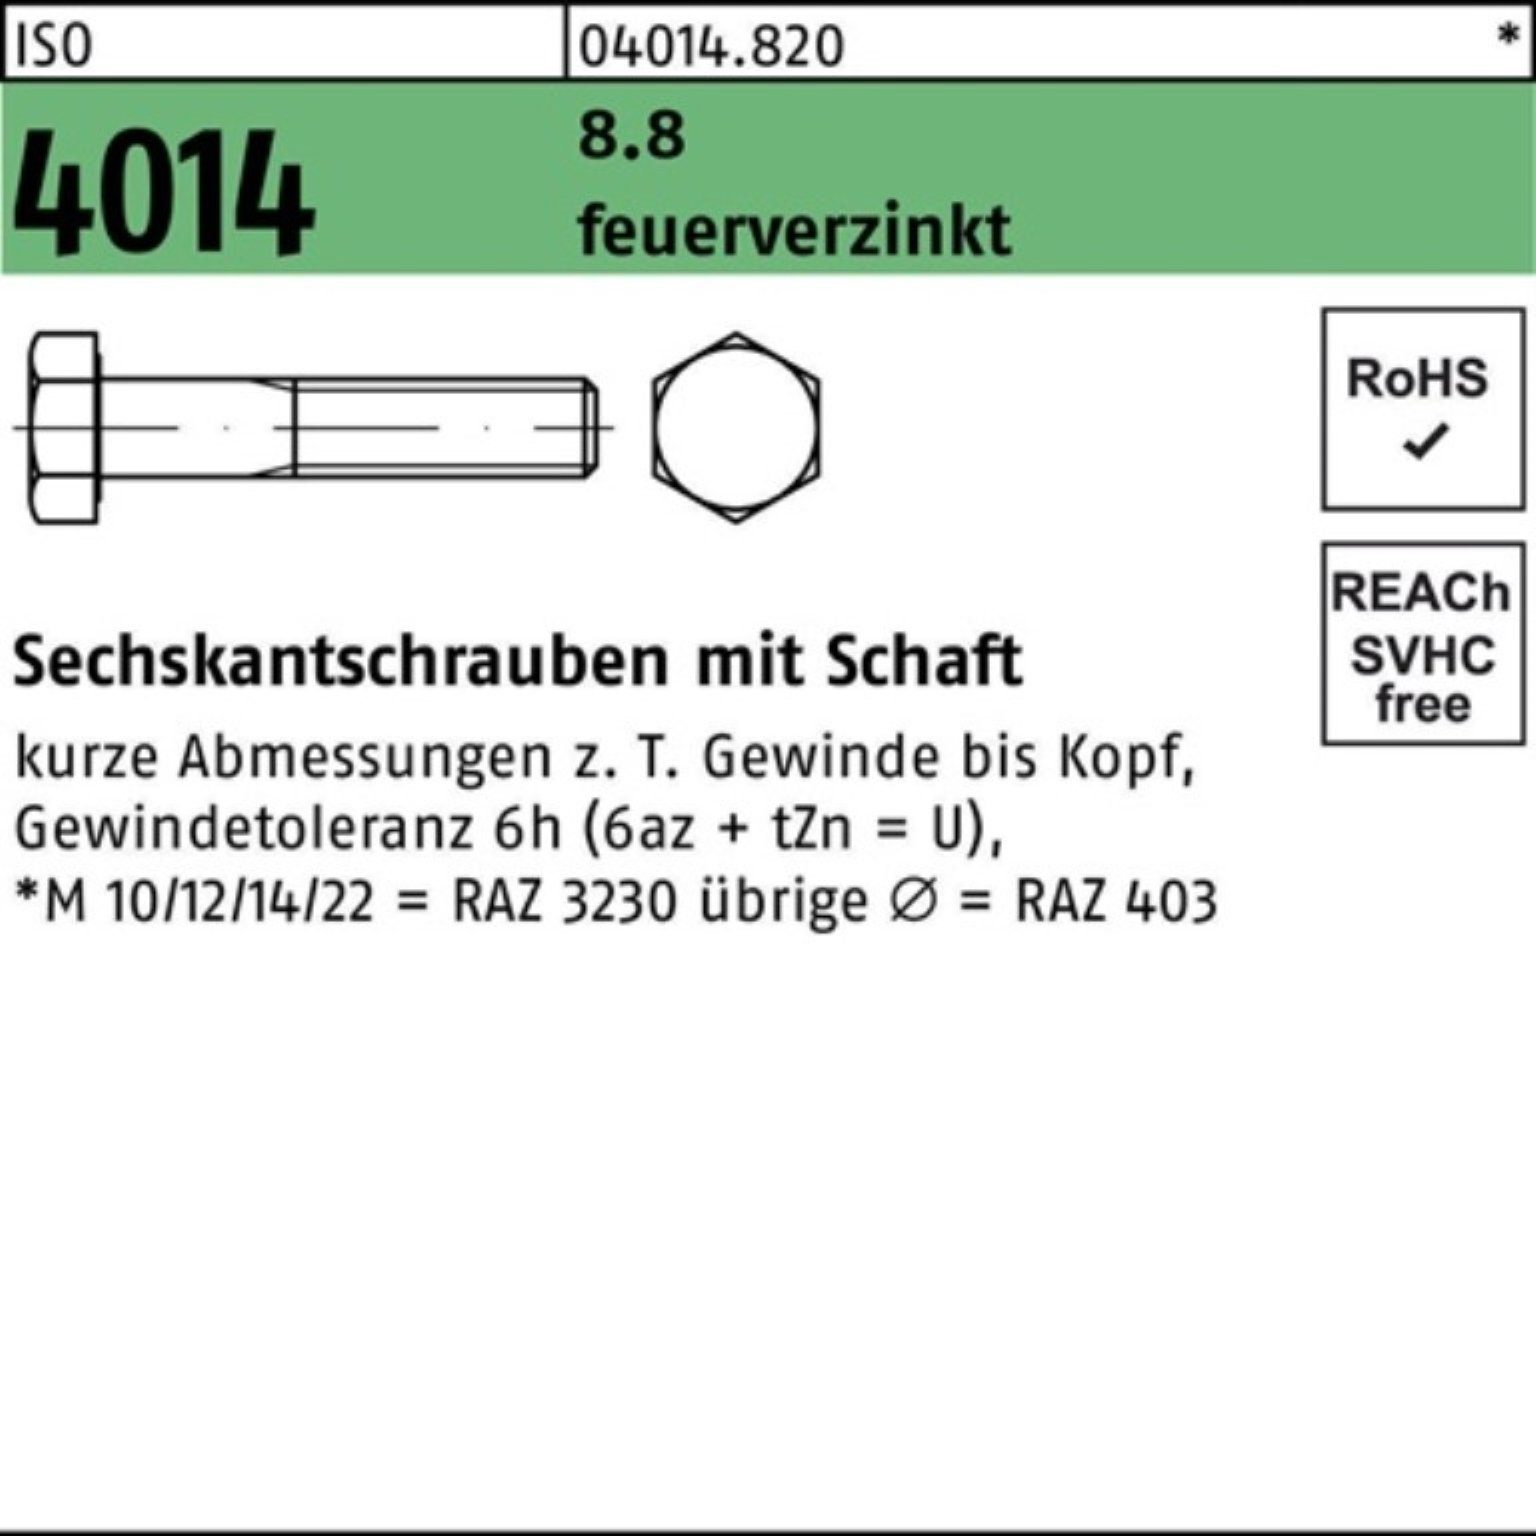 Bufab Sechskantschraube 100er Pack Sechskantschraube ISO 4014 Schaft M24x 220 8.8 feuerverz. 1